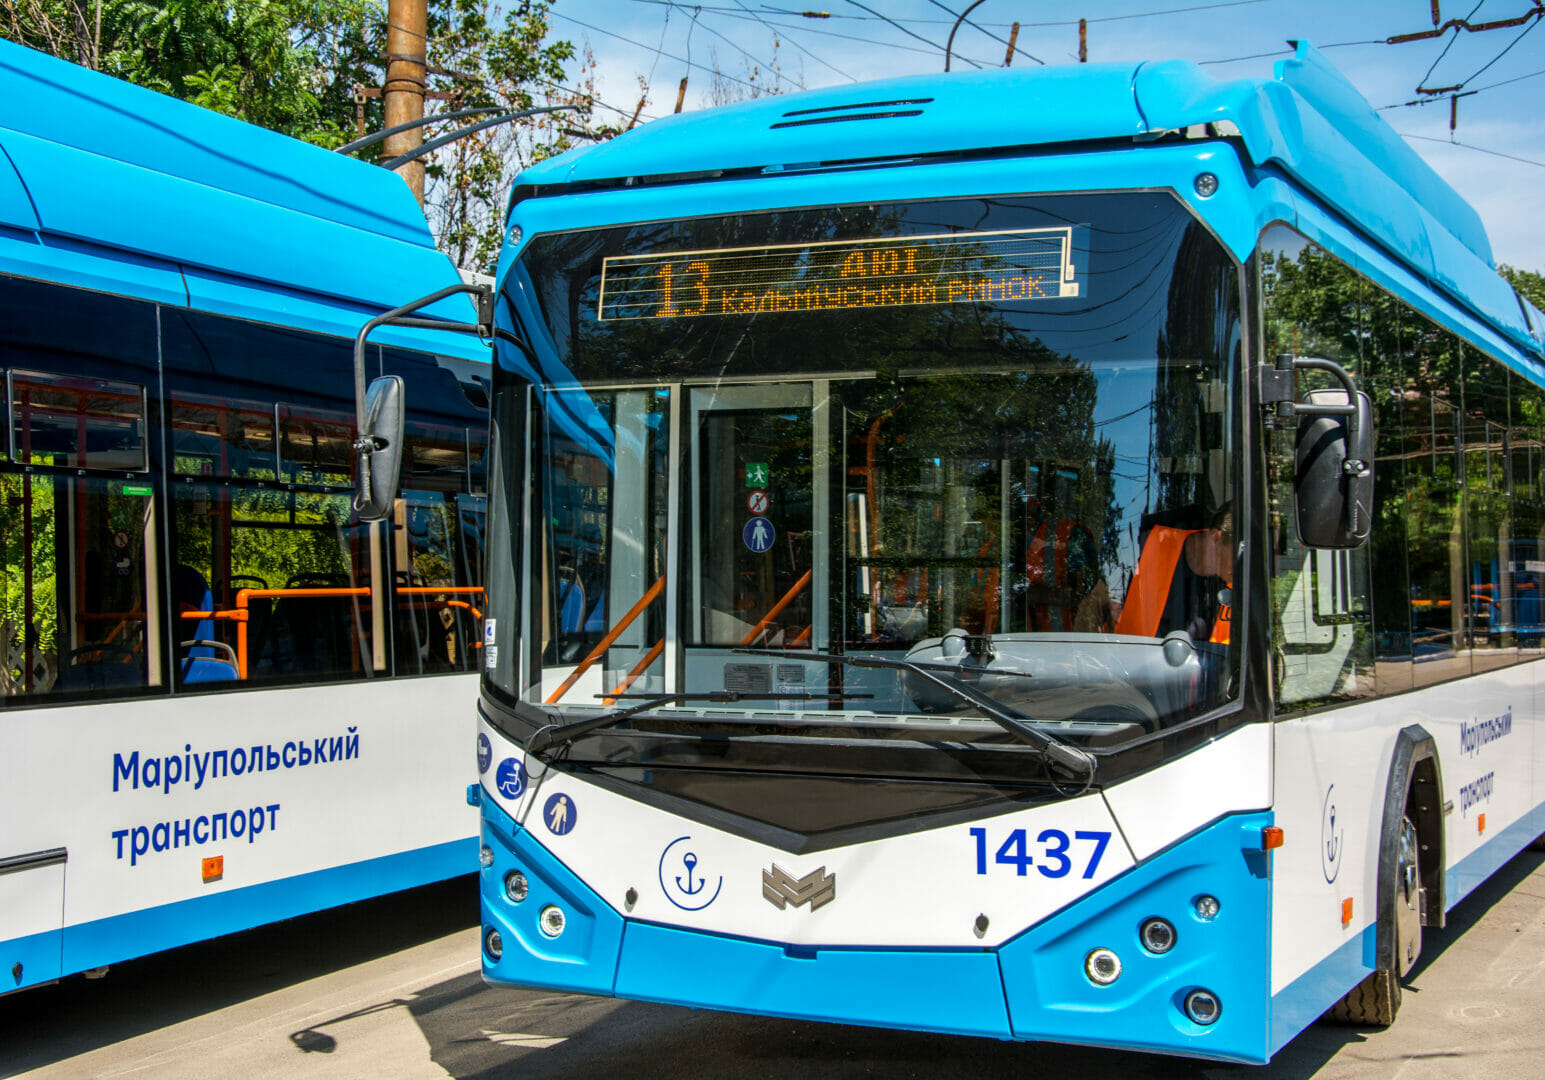 Mariupol municipal transport